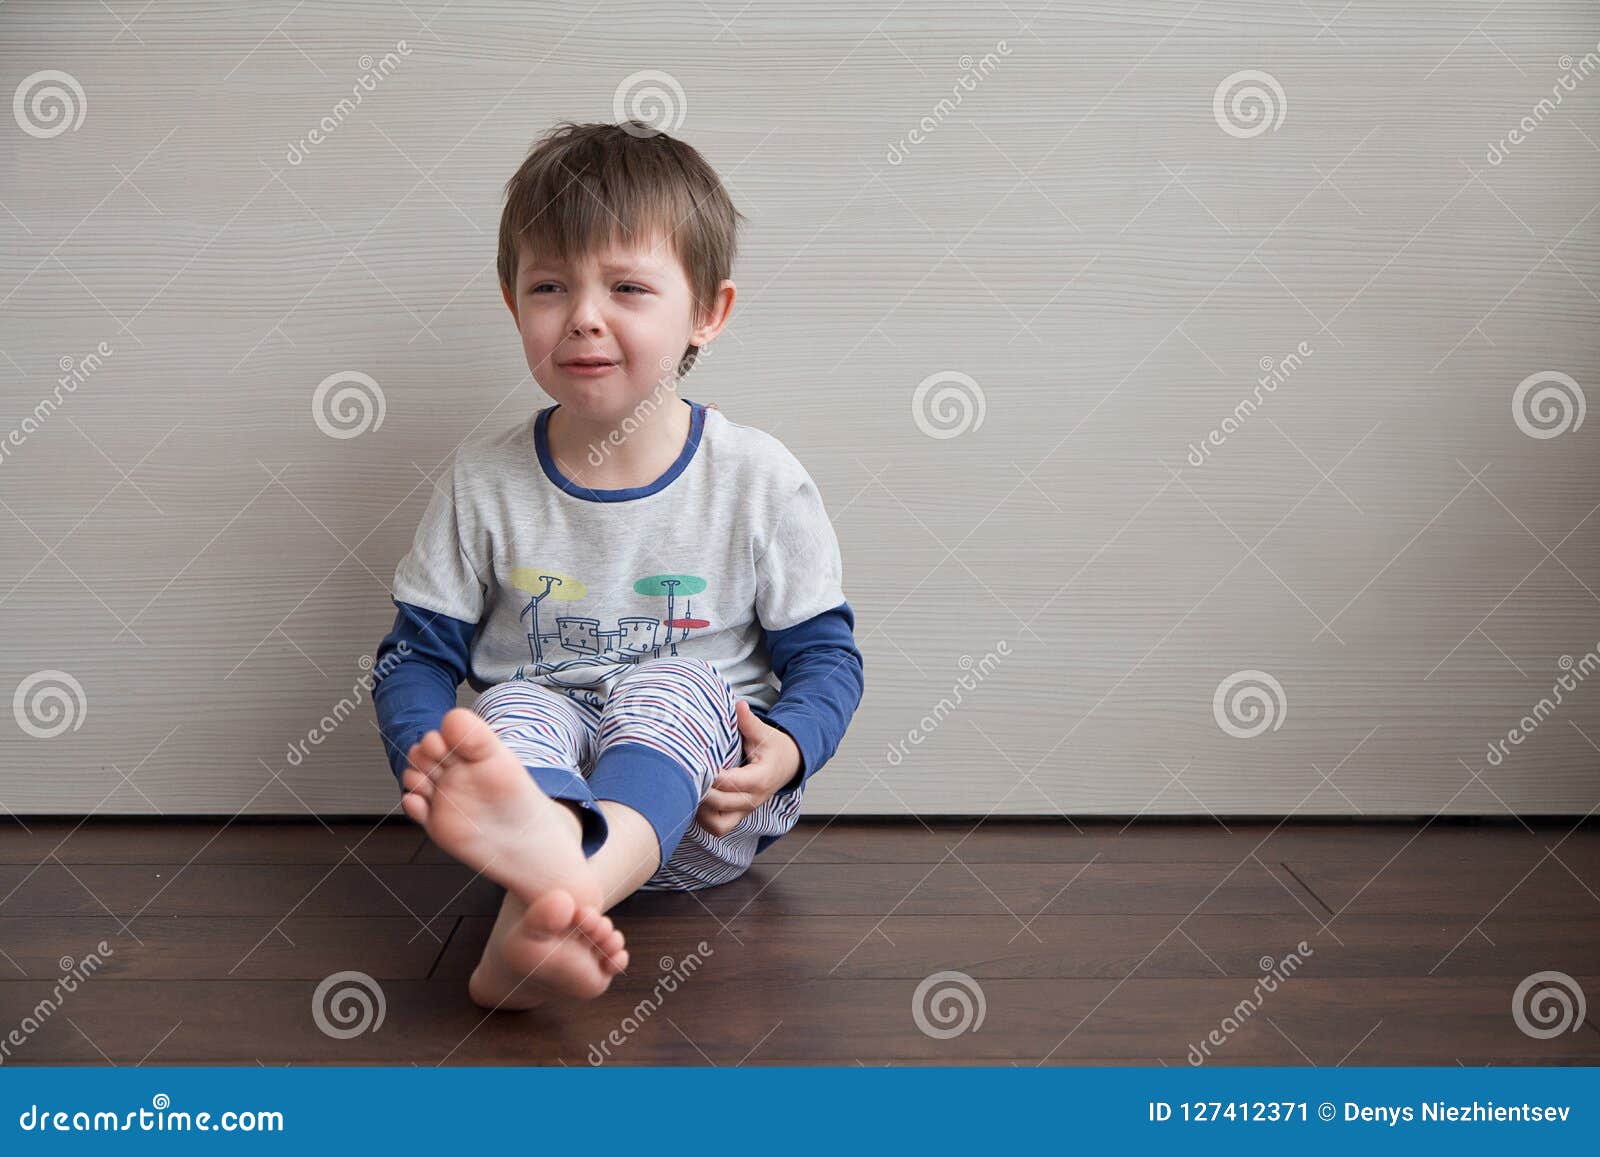 Мальчик сидит плачет. Ребенок сидит на полу. Мальчик сидит на полу. Малыш сидит на полу. Мальчик сидит и плачет.